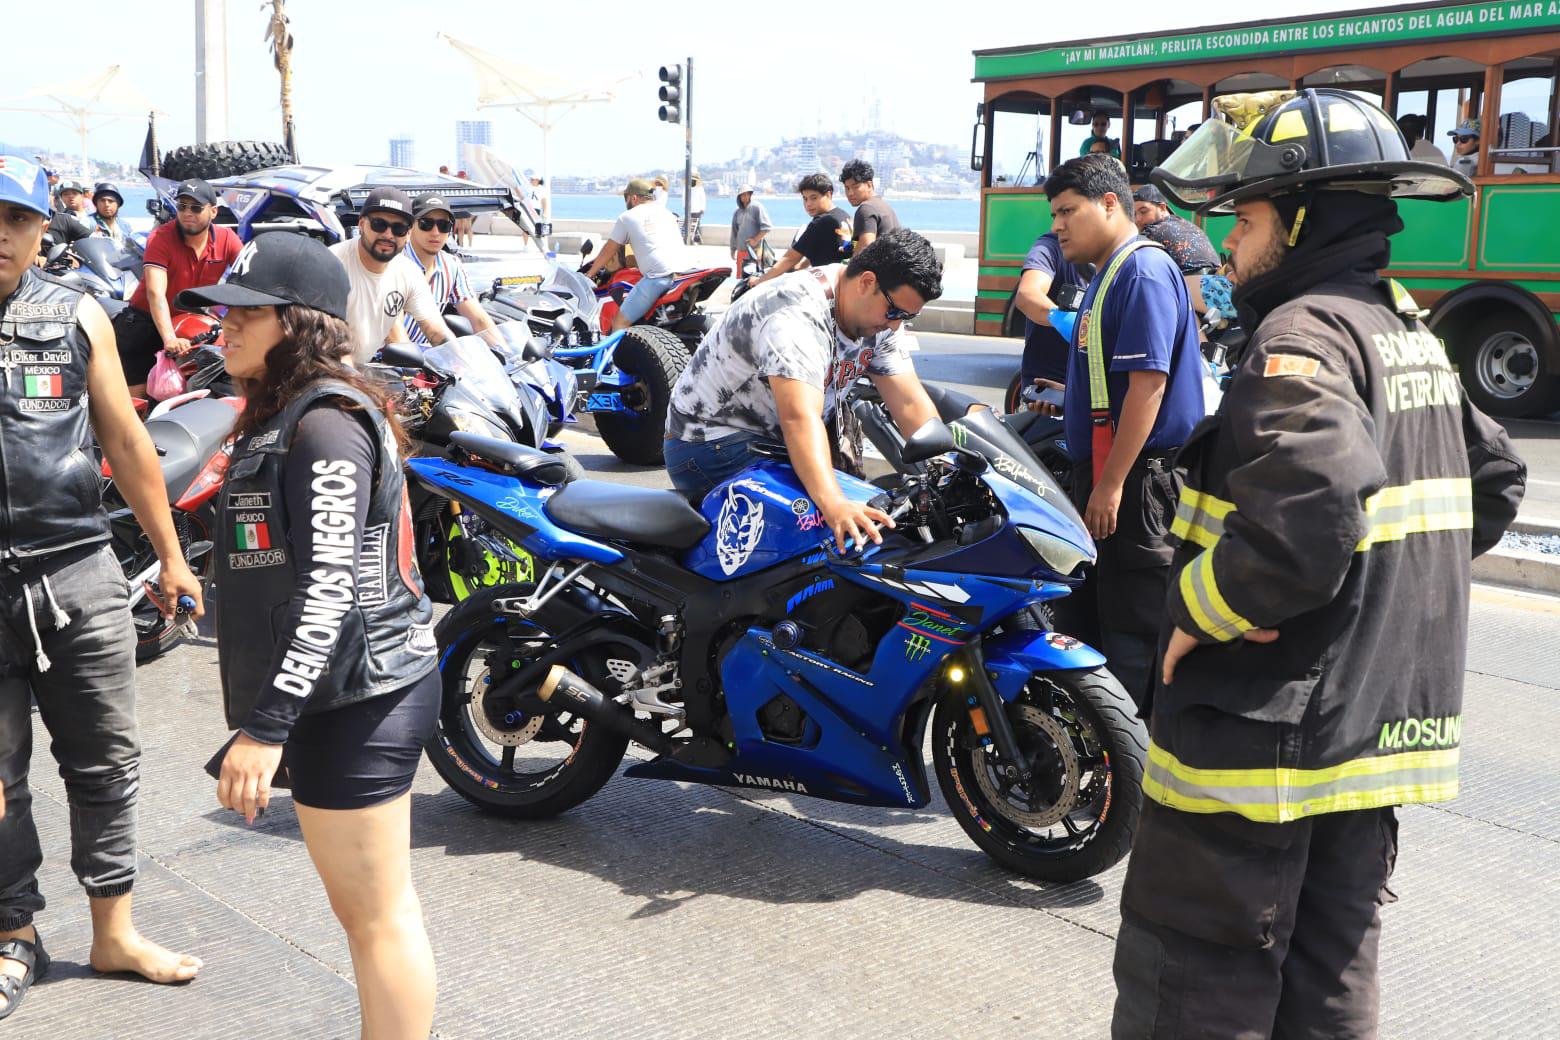 $!VIDEO | Se registran dos accidentes de motociclistas en el mismo crucero en Mazatlán